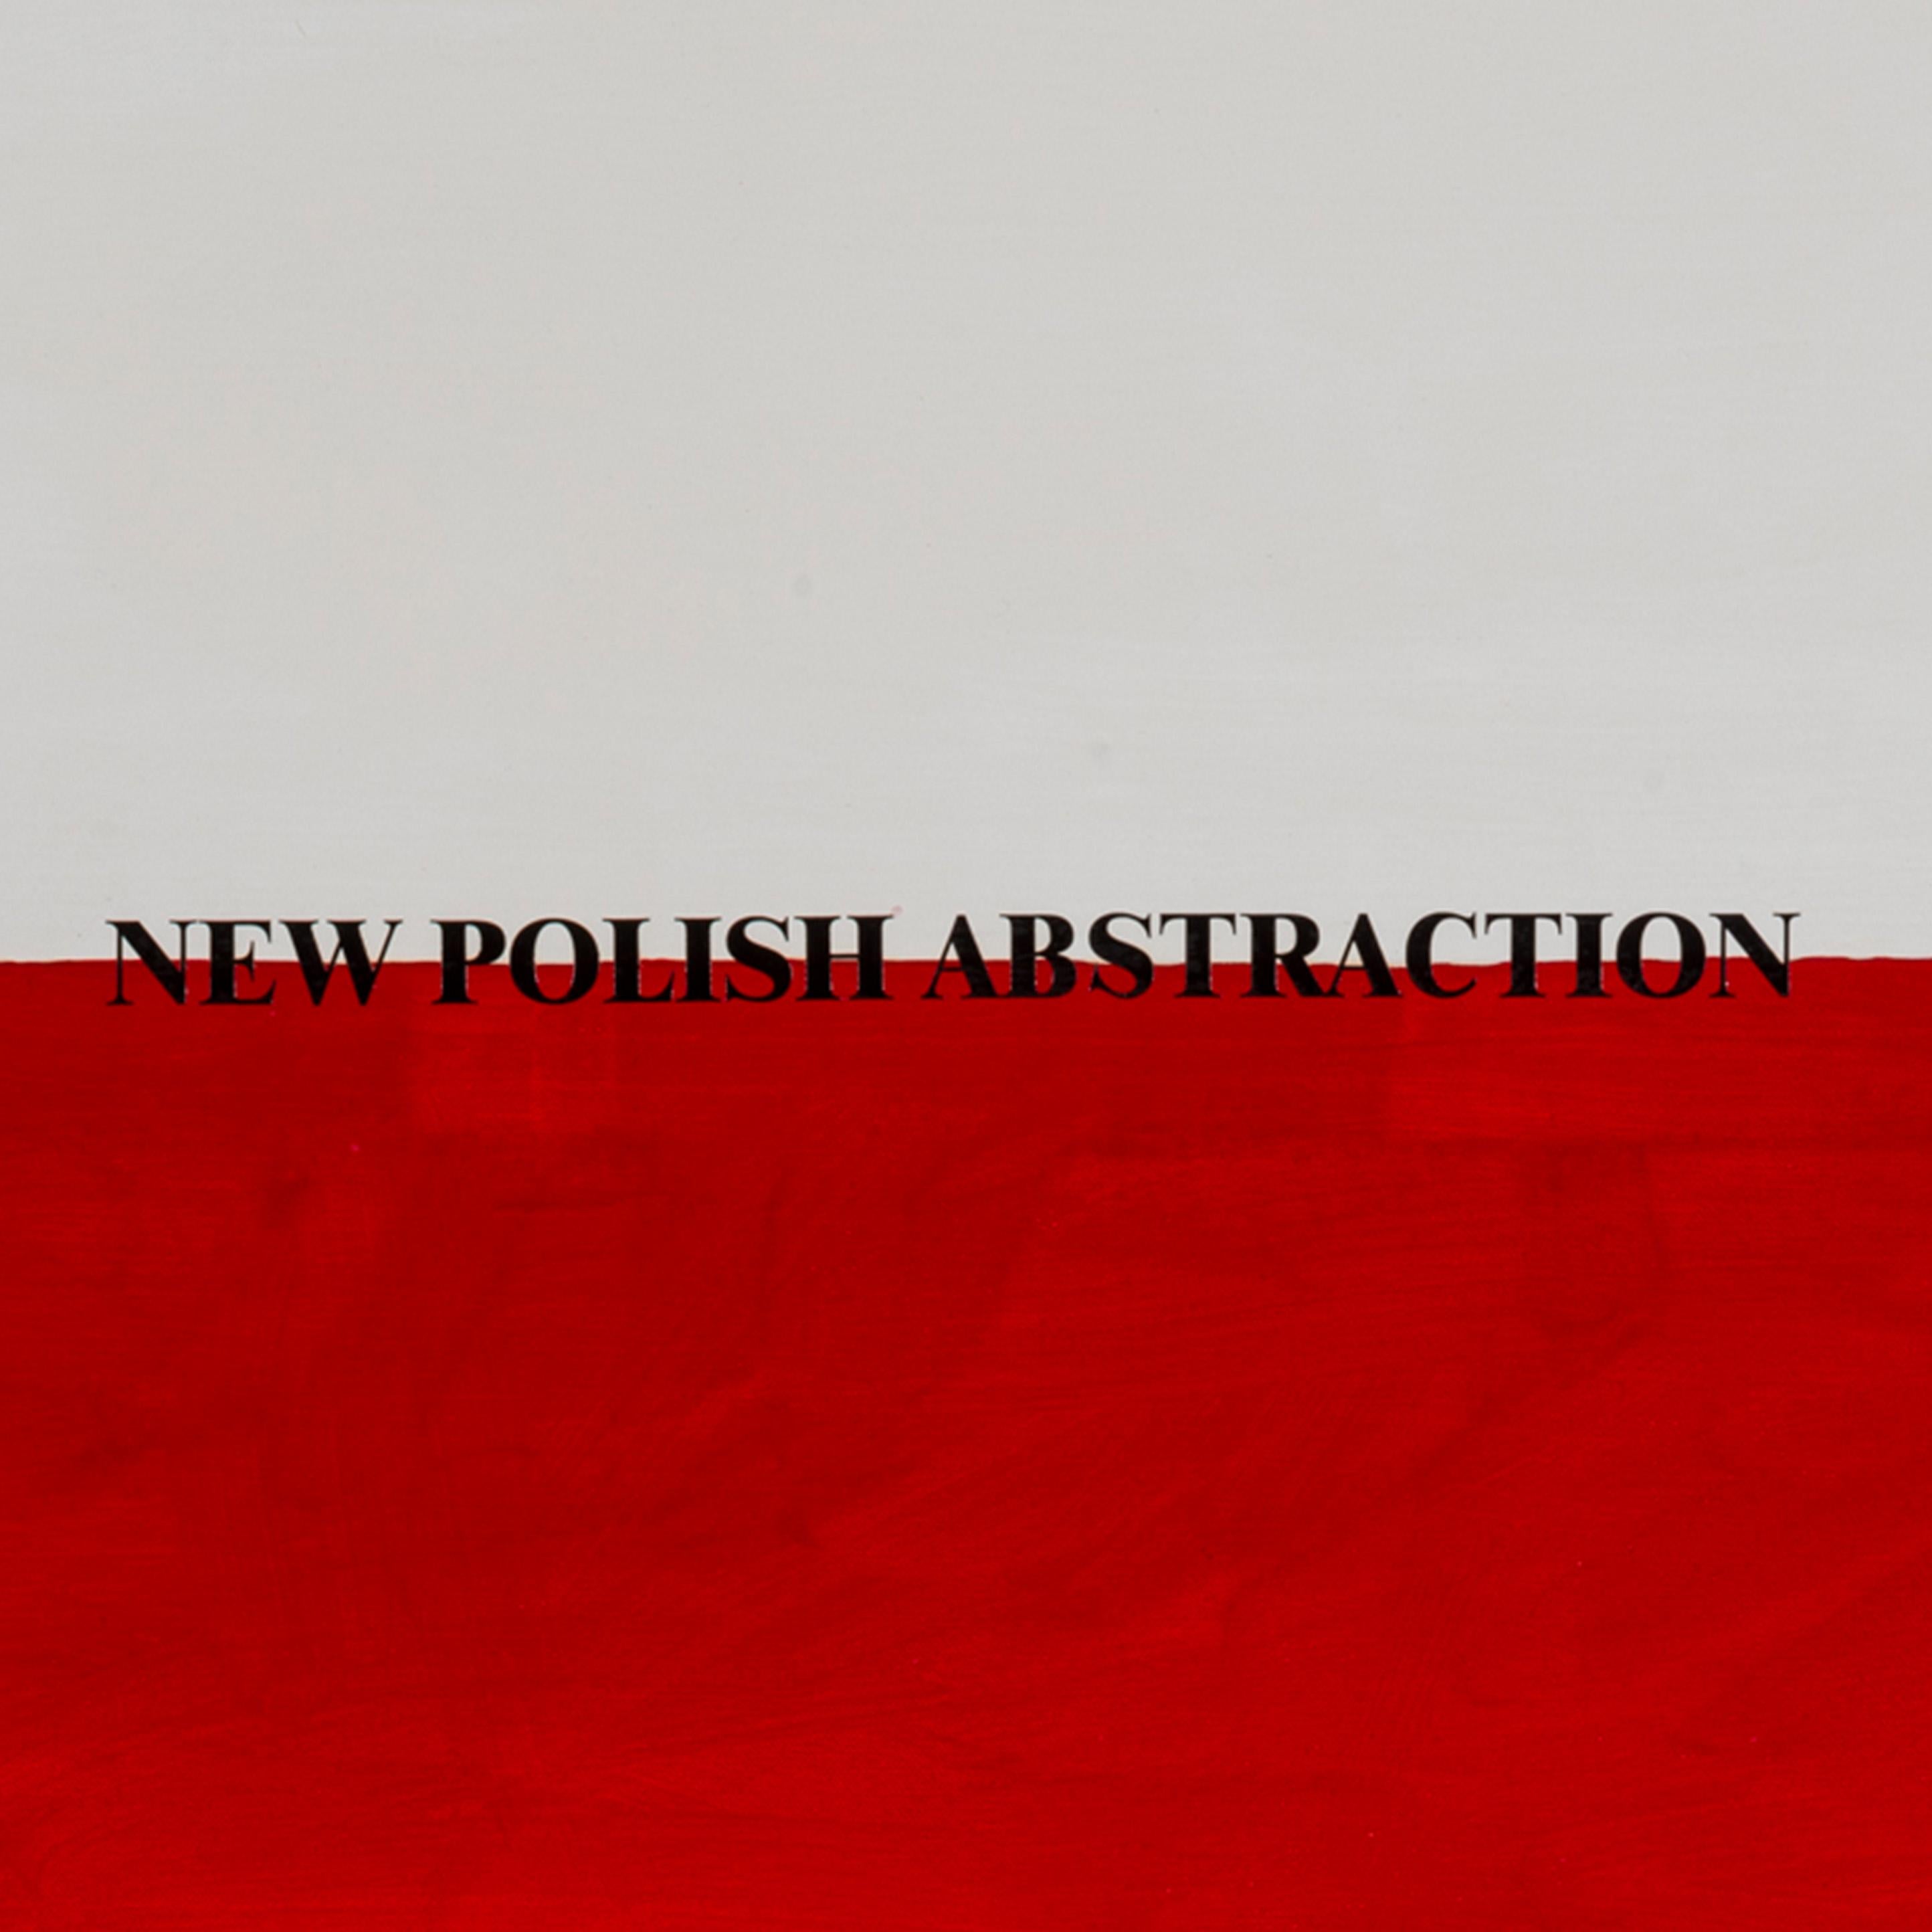 Neue polnische Abstraktion, 1972-2002, Acryl auf Leinwand, Flaggen, Visuelle Poesie (Red), Abstract Painting, von Sarenco